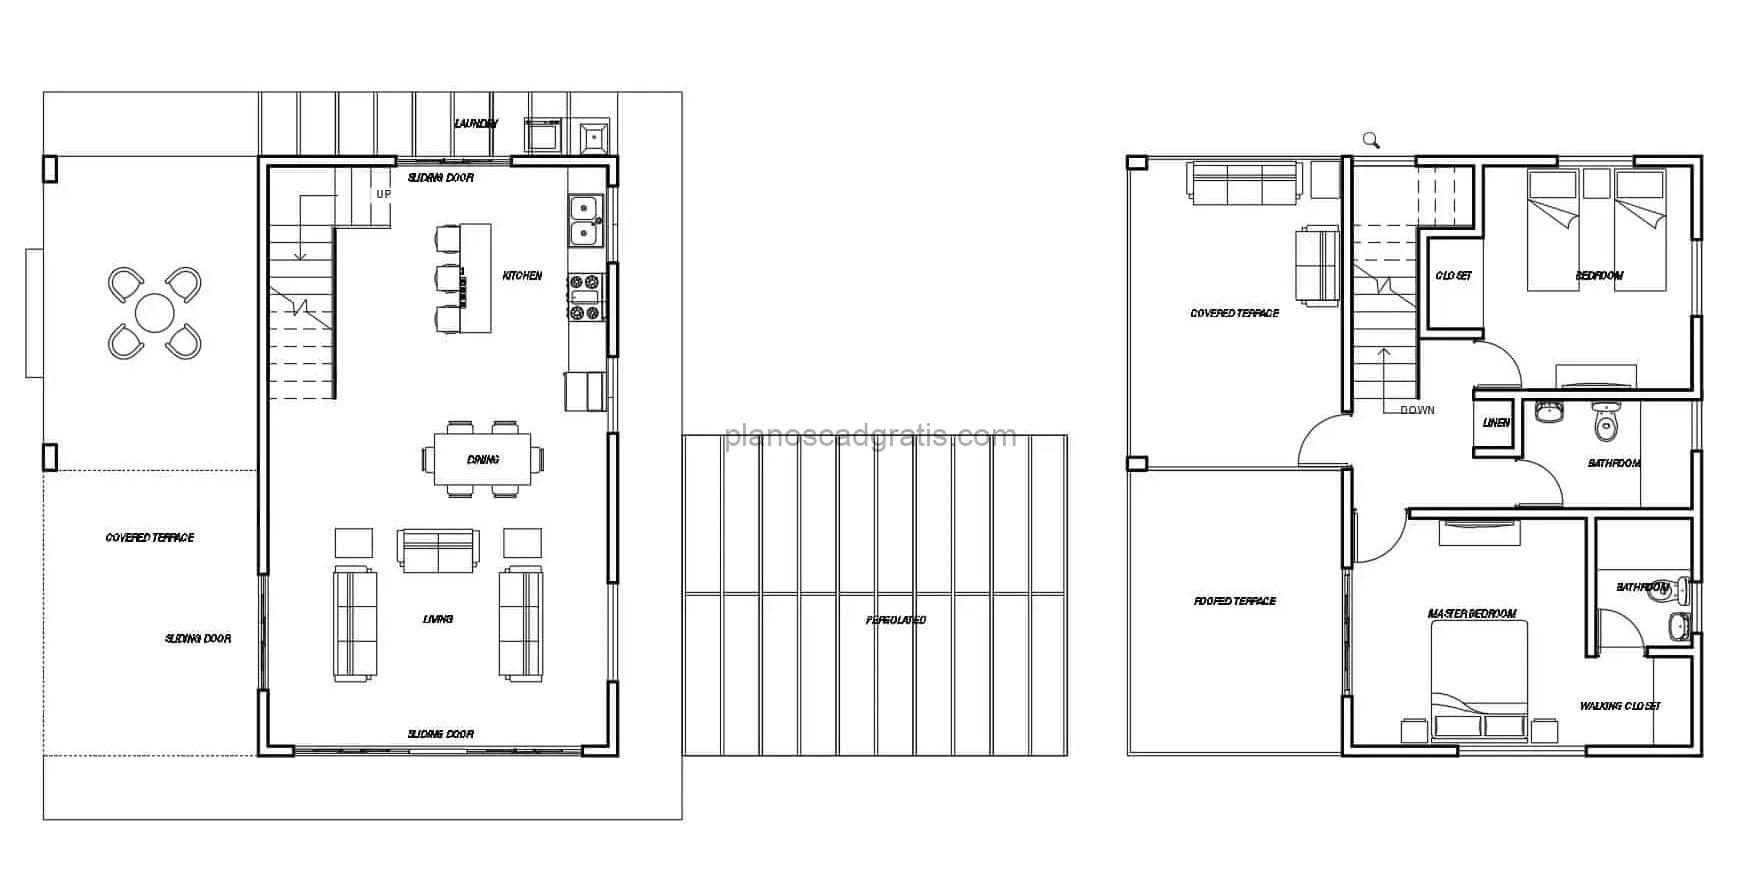 Plano arquitectonico en formato DWG de residencia de dos niveles con dos habitaciones en segundo nivel, terraza lateral y planta dimensionada, planos para descarga gratis en formato DWG de Autocad